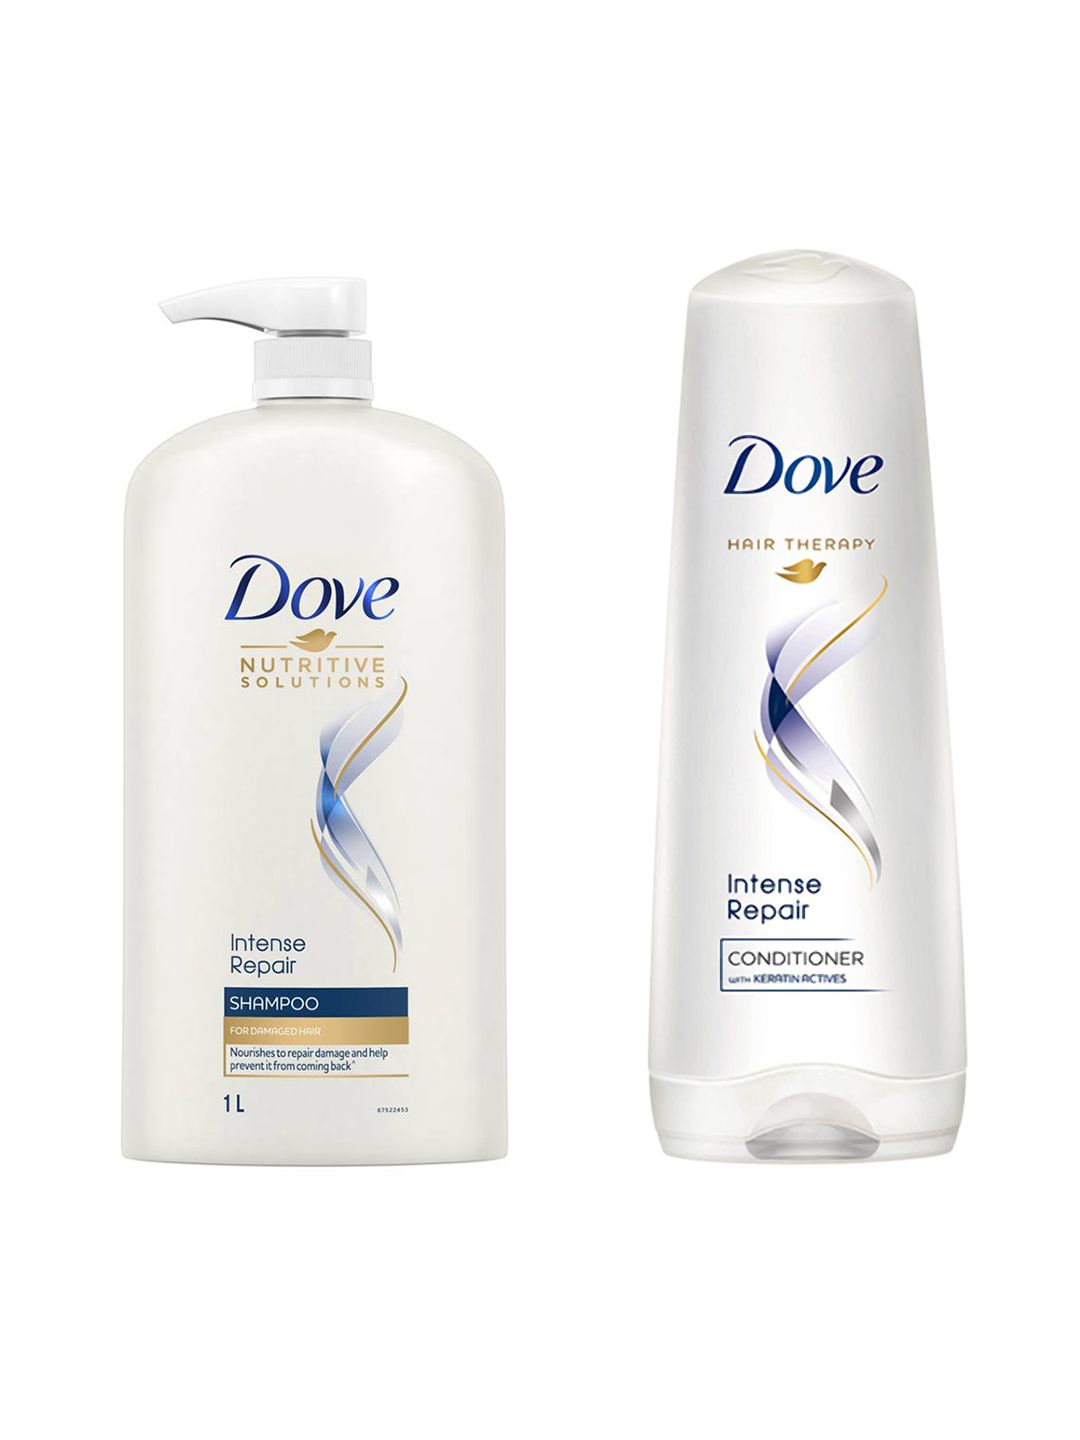 Dove Unisex Set of Intense Repair Shampoo & Conditioner Price in India